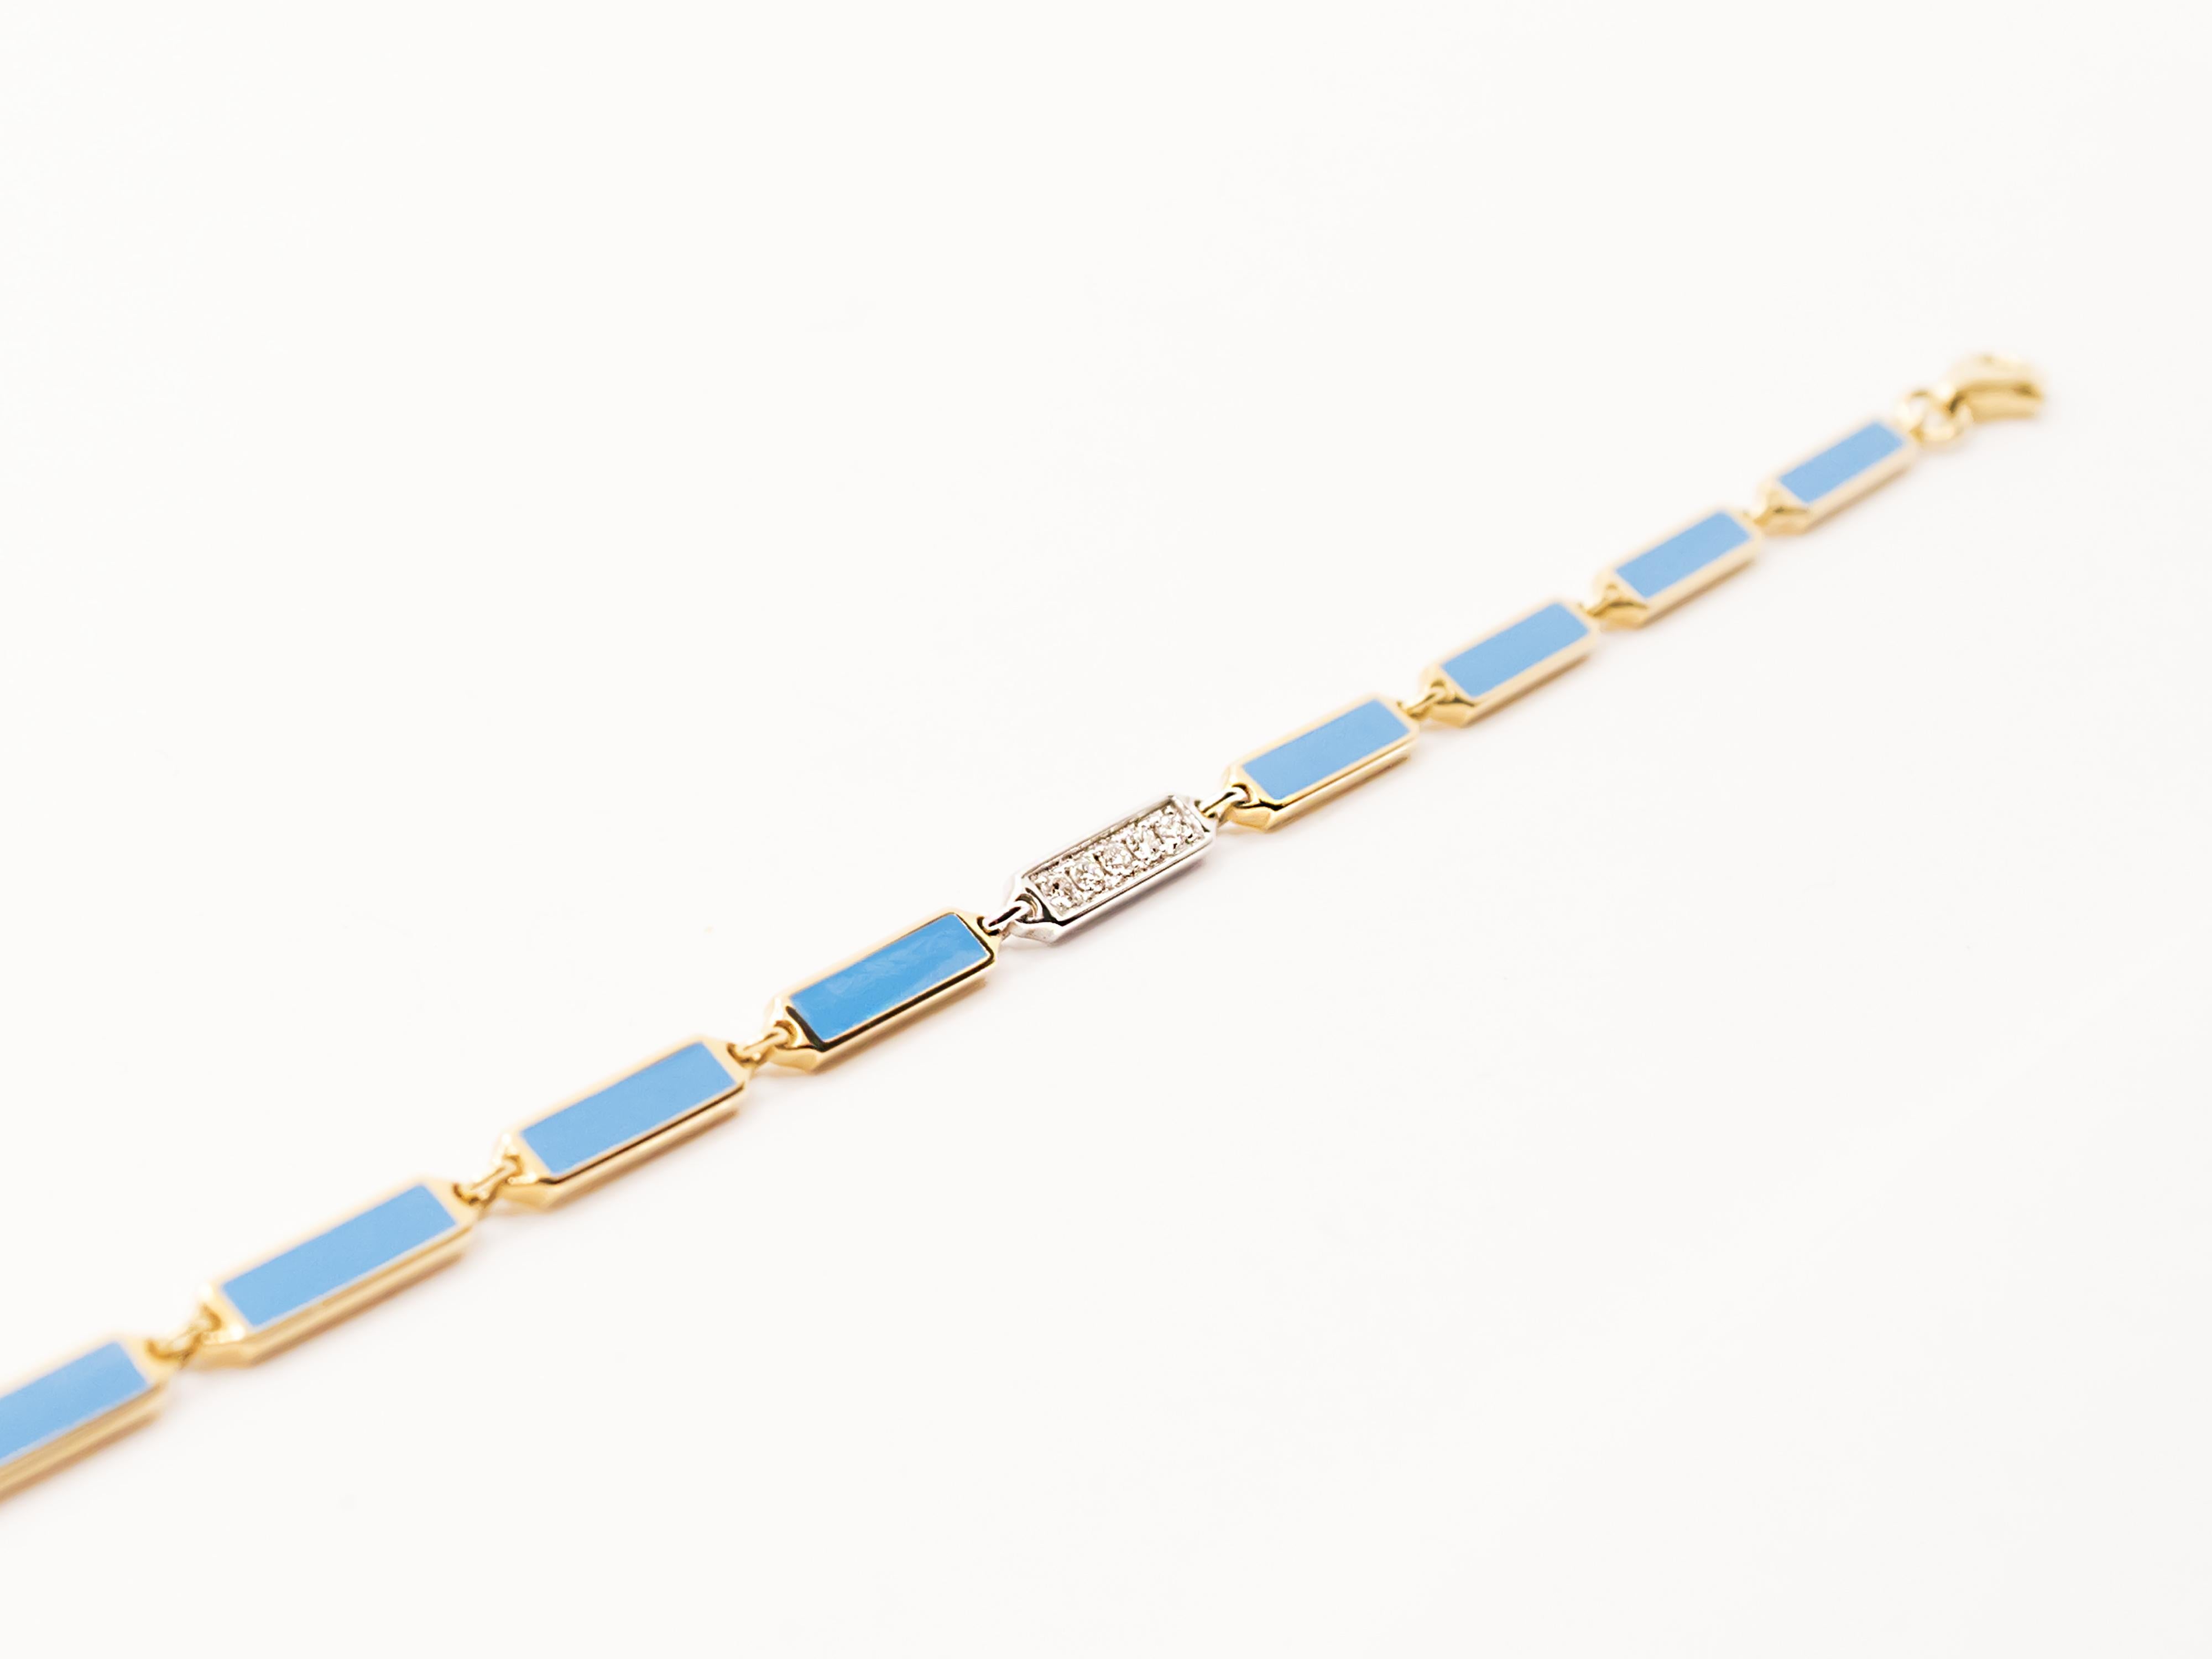 Ein Armband im Stil der 70er Jahre mit zeitgenössischer italienischer Produktion.
Dieses Armband kann sowohl von Männern als auch von Frauen getragen werden.
Es besteht aus sechseckigen Modulen. Jedes davon enthält ein türkisfarbenes Rechteck aus